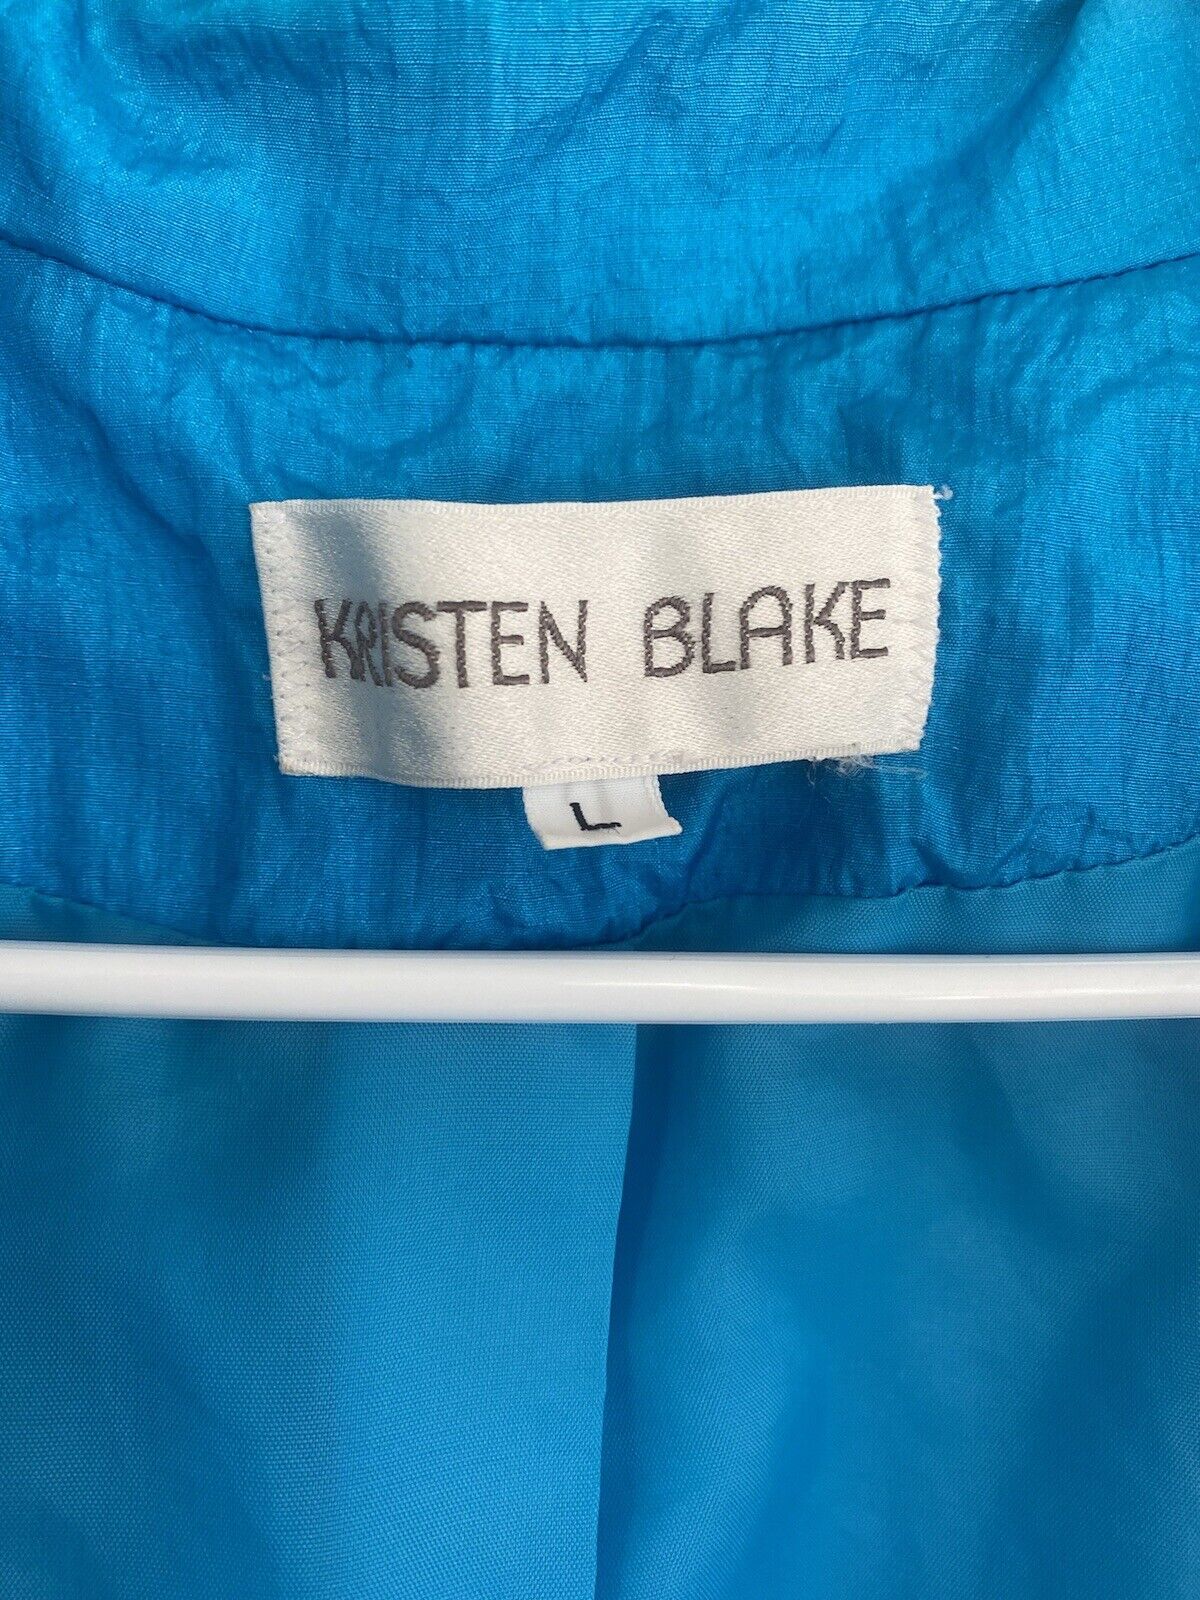 Vintage Blue Windbreaker Jacket - Kristen Blake - Women’s  Large # 1937